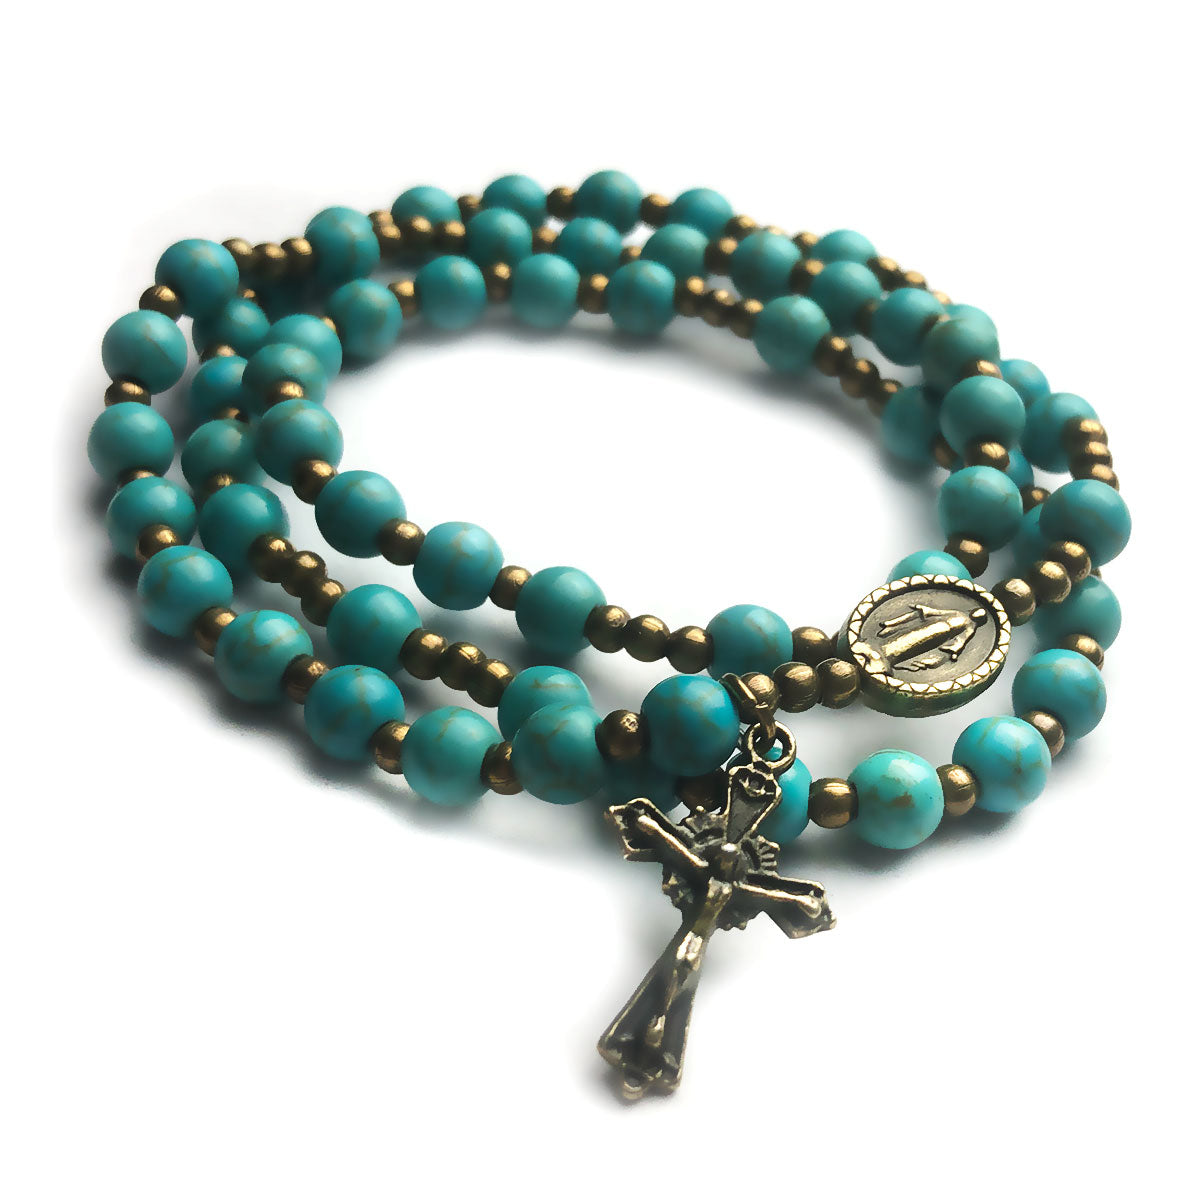 Turquoise Stone Full 5-Decade Catholic Rosary Bracelet by Catholic Heirlooms - Confirmation - Holy Communion Gift